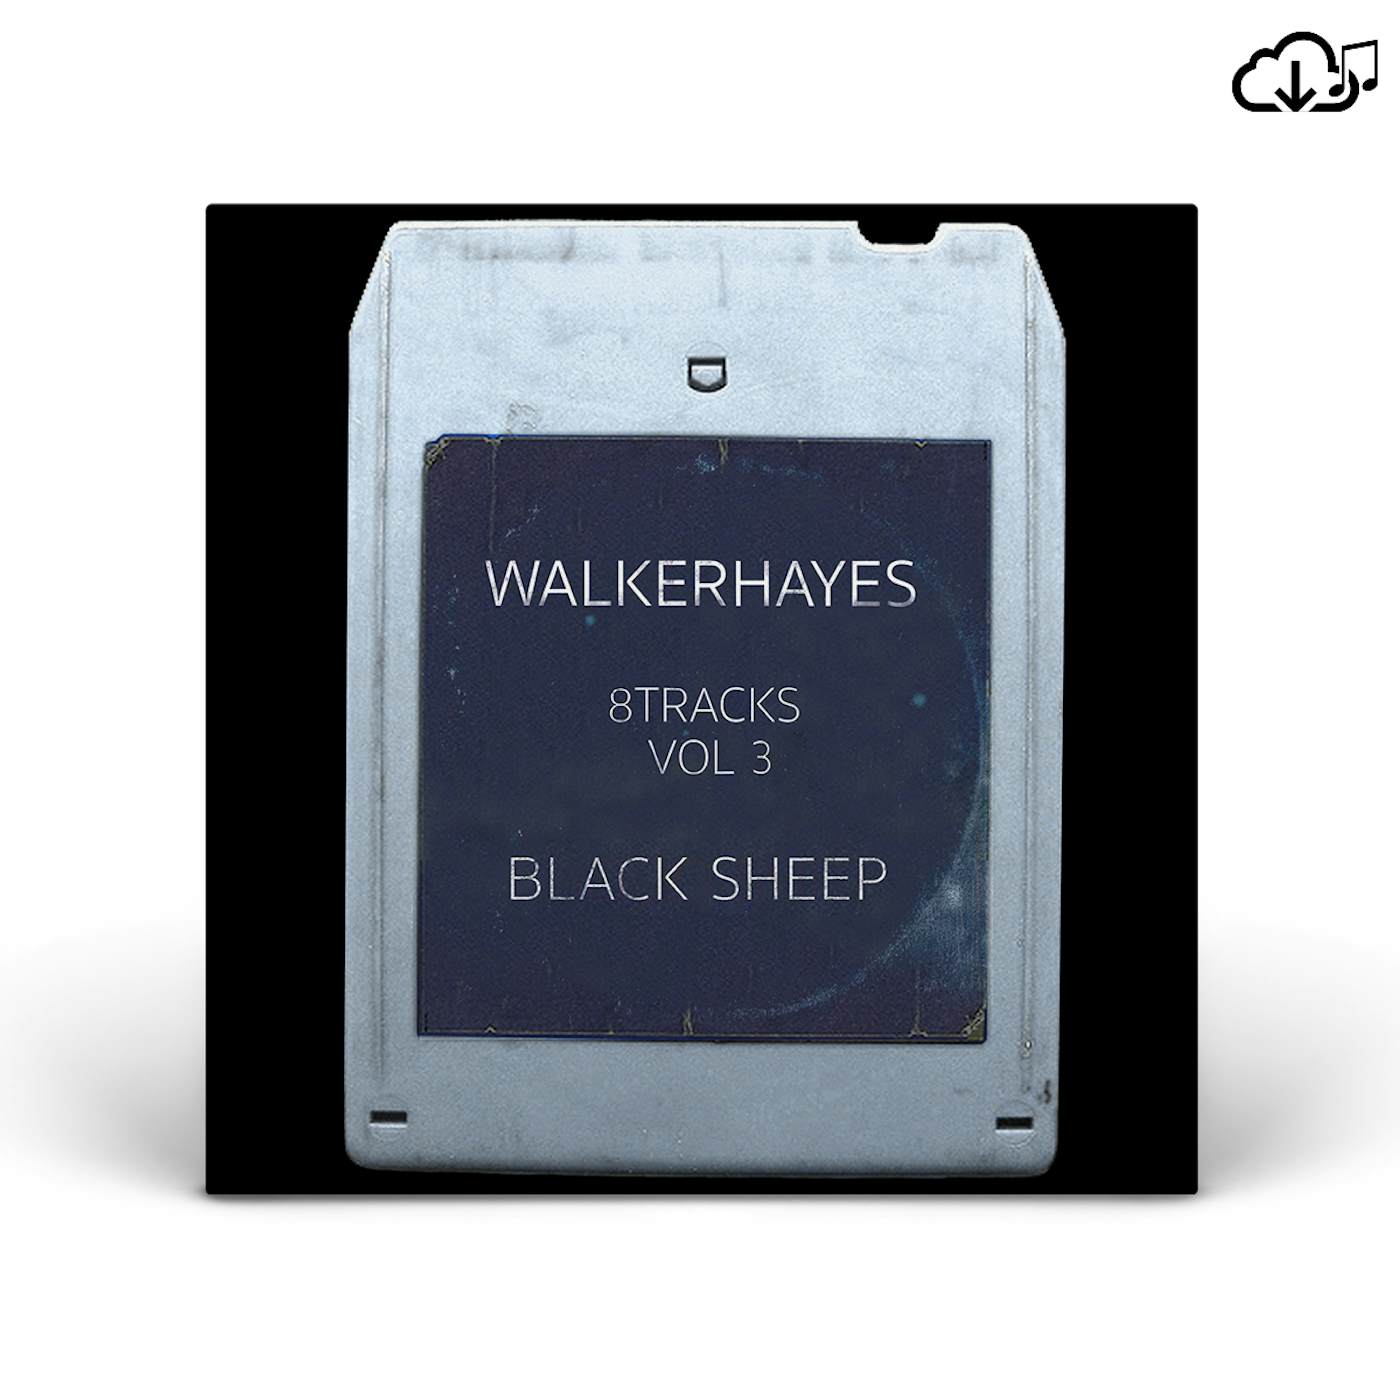 Walker Hayes’s 8Tracks, Vol. 3 – Black Sheep CD